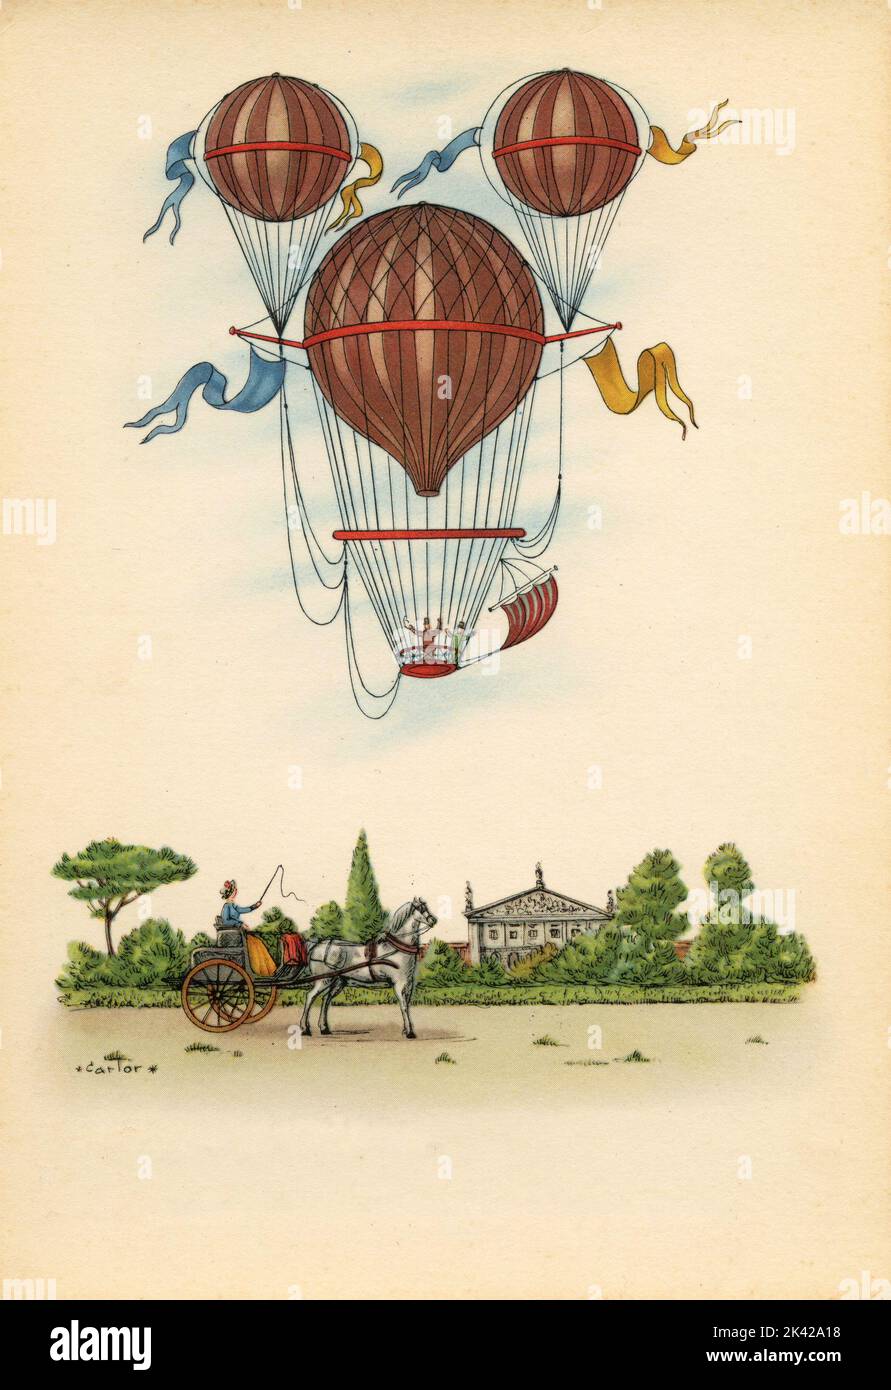 Illustration de l'ascension avec le ballon d'air chaud de Margat, France 1850 Banque D'Images